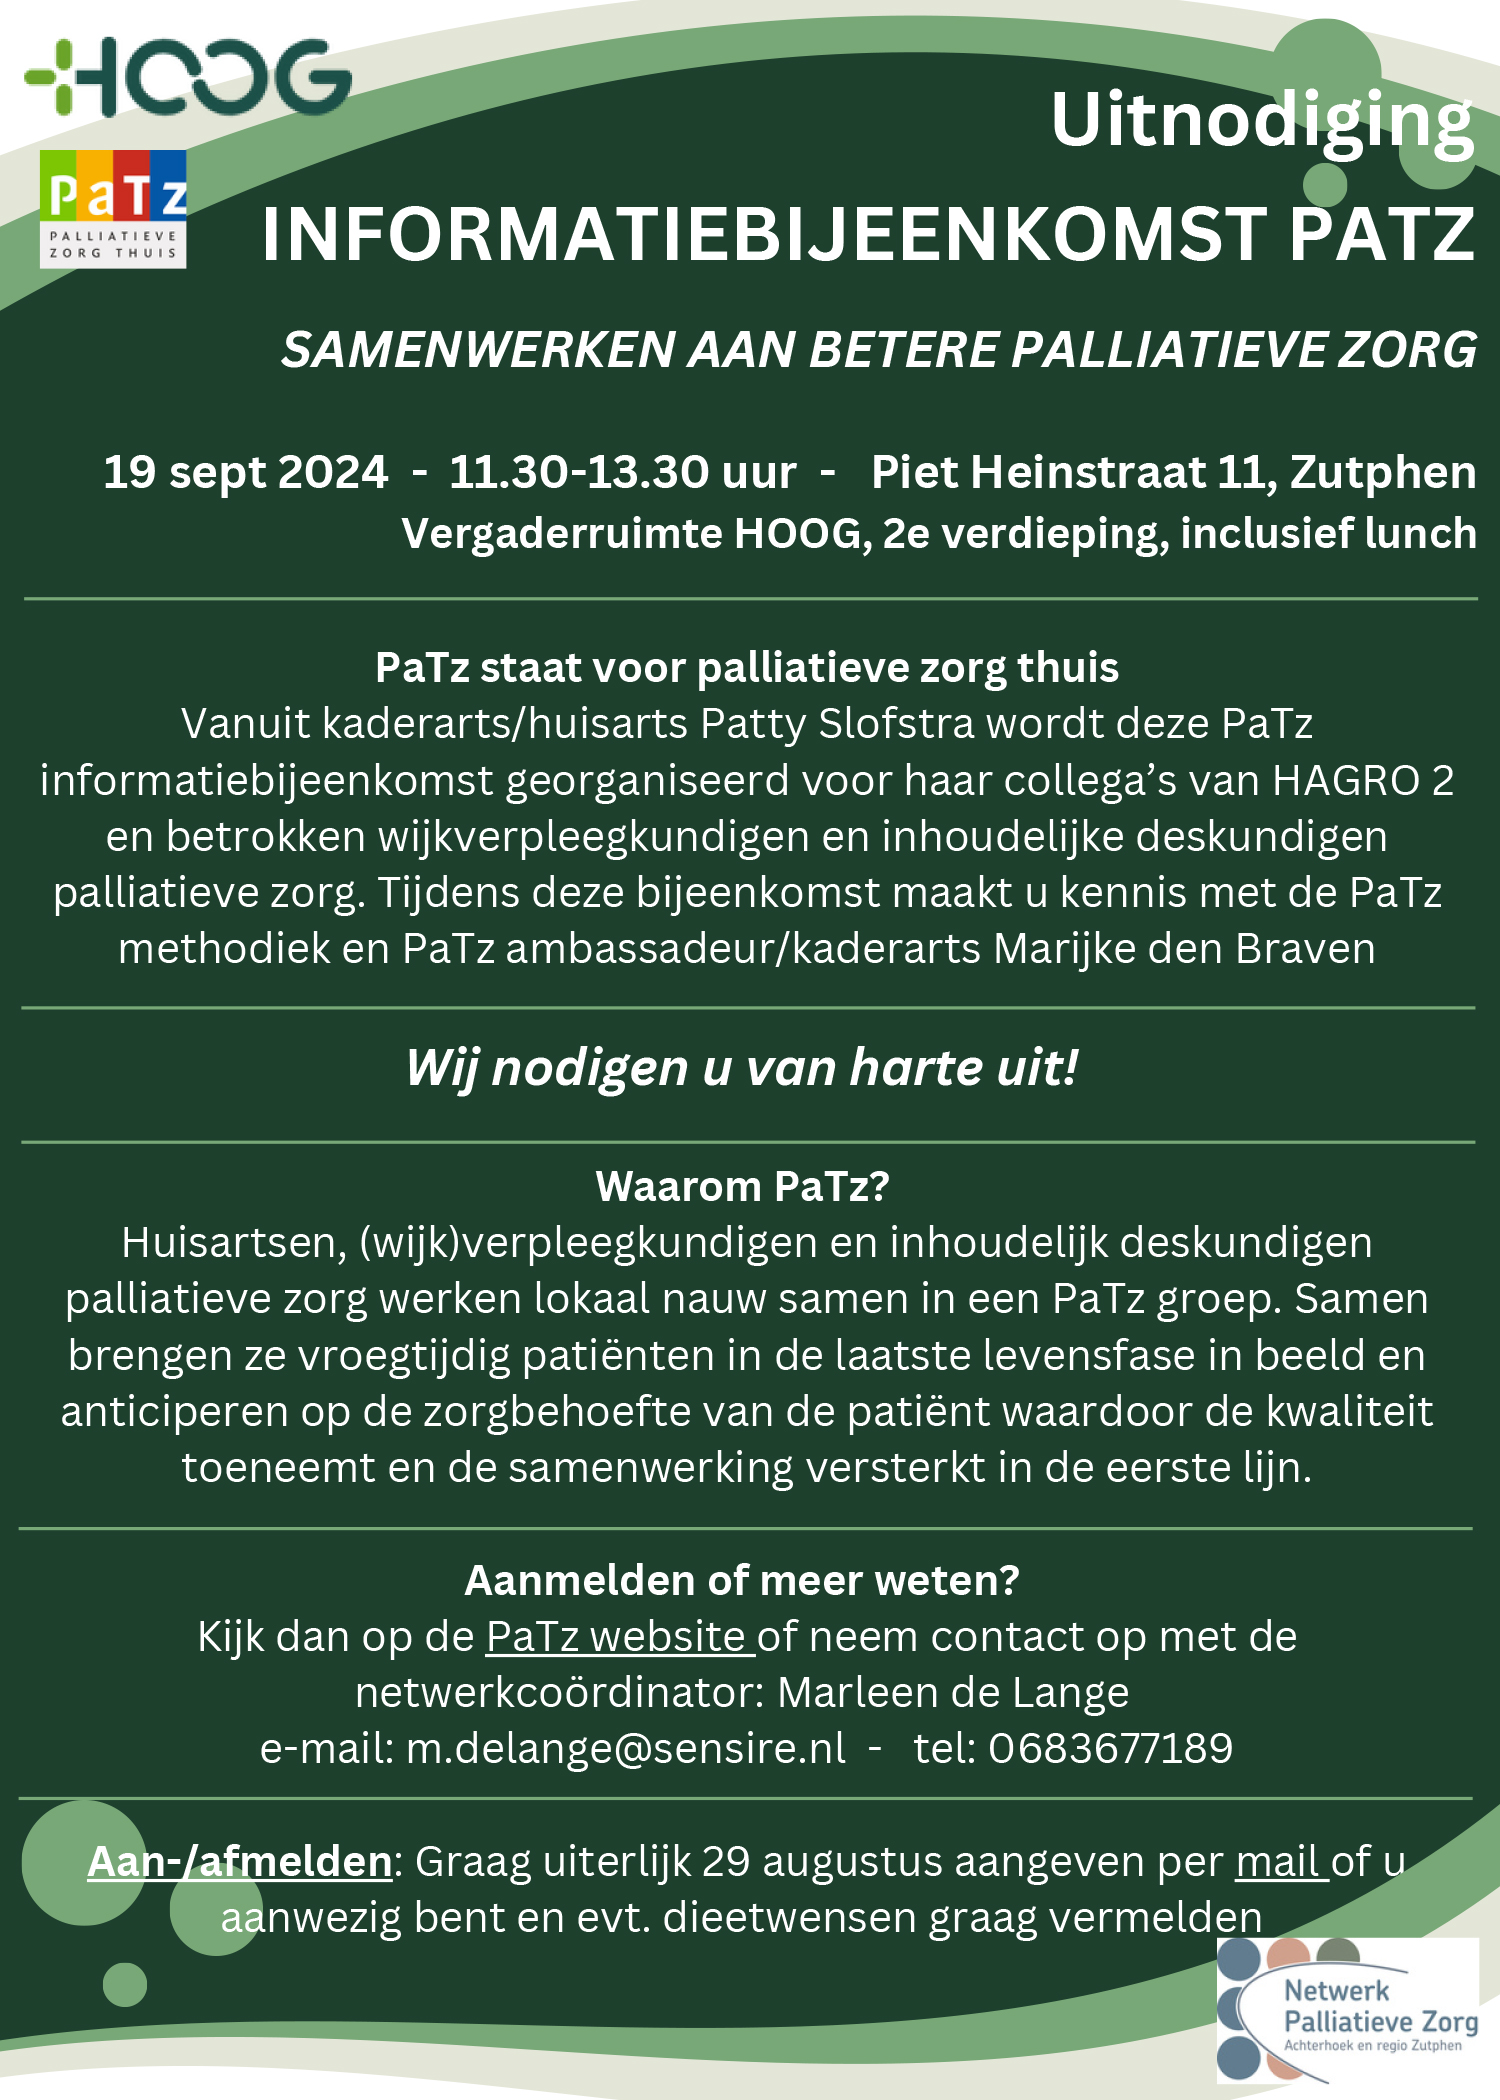 240919-Uitnodiging-PaTz-informatiebijeenkomst-HAGRO-2-Zutphen.jpg